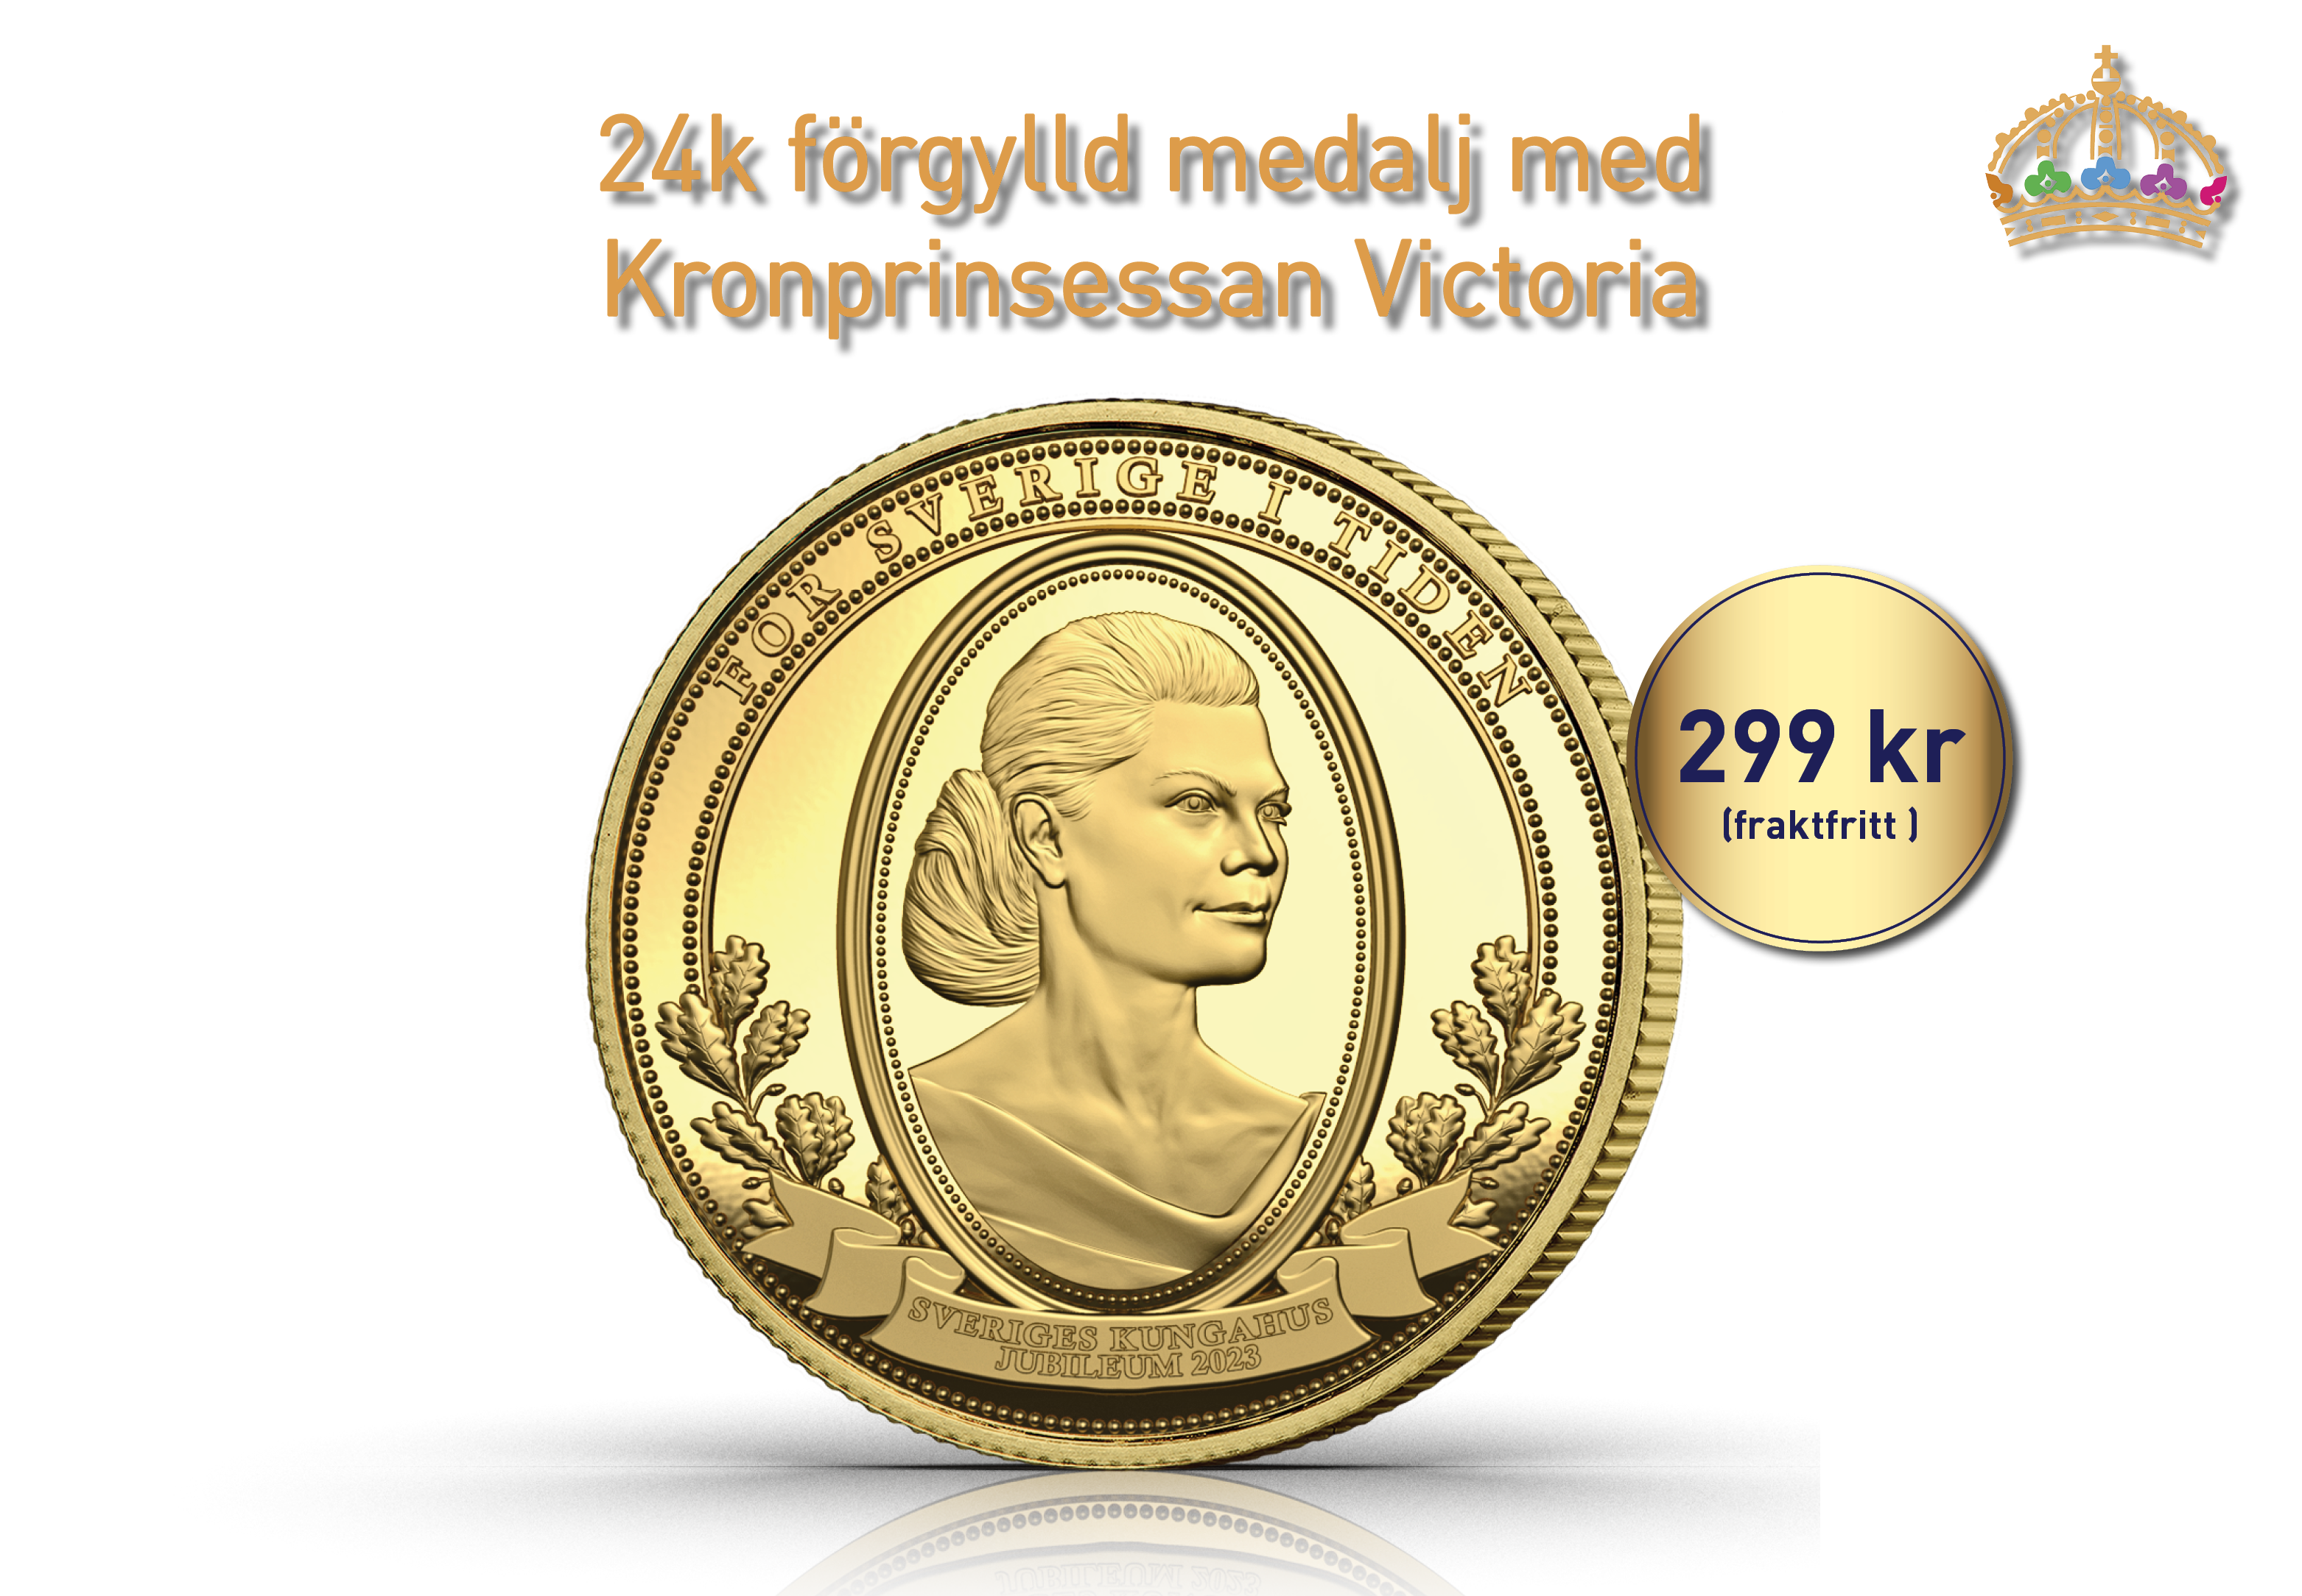 Förgylld medalj - Kronprinsessan Victoria